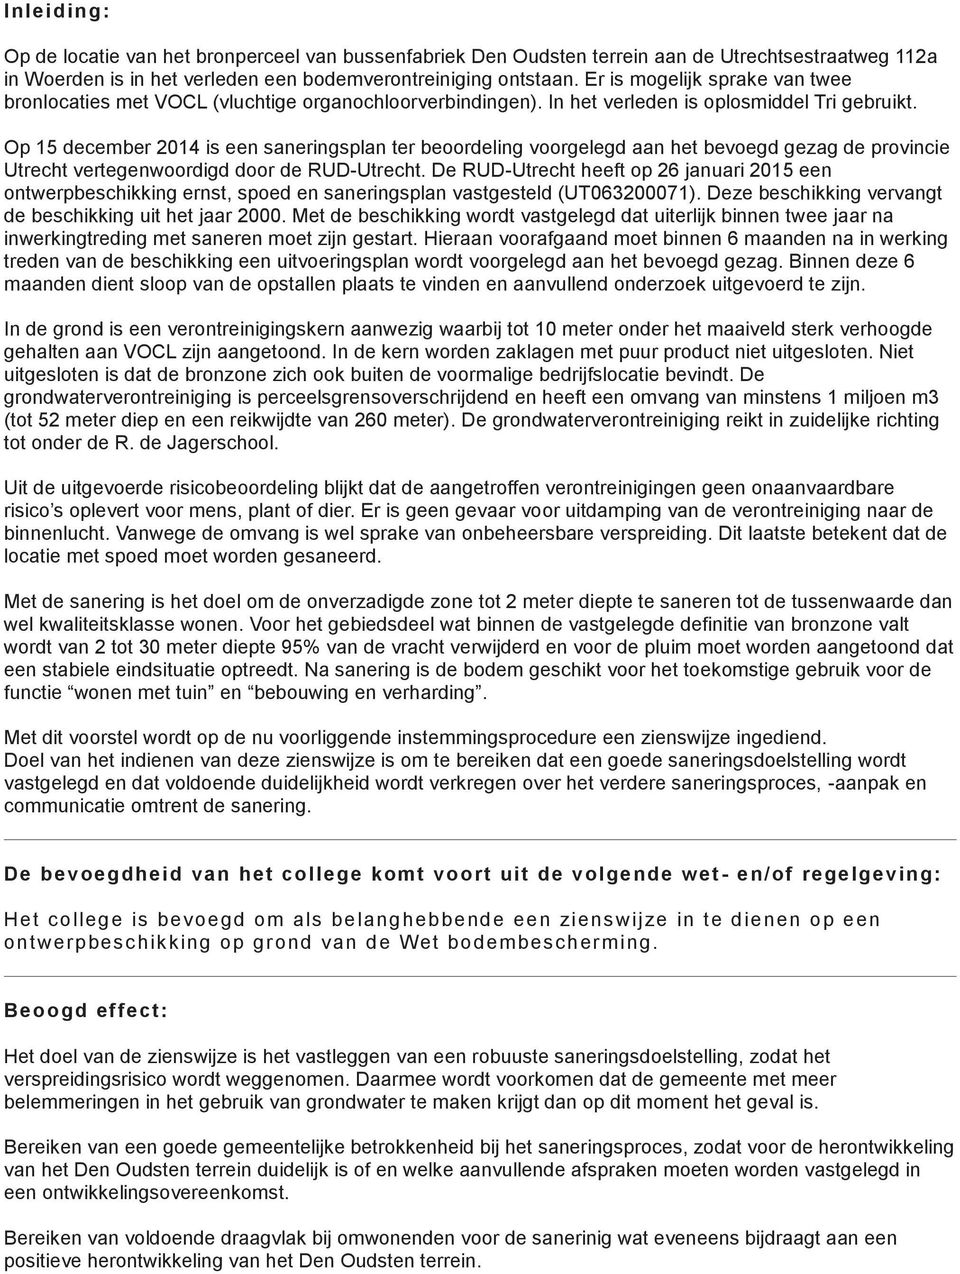 Op 15 december 2014 is een saneringsplan ter beoordeling voorgelegd aan het bevoegd gezag de provincie Utrecht vertegenwoordigd door de RUD-Utrecht.